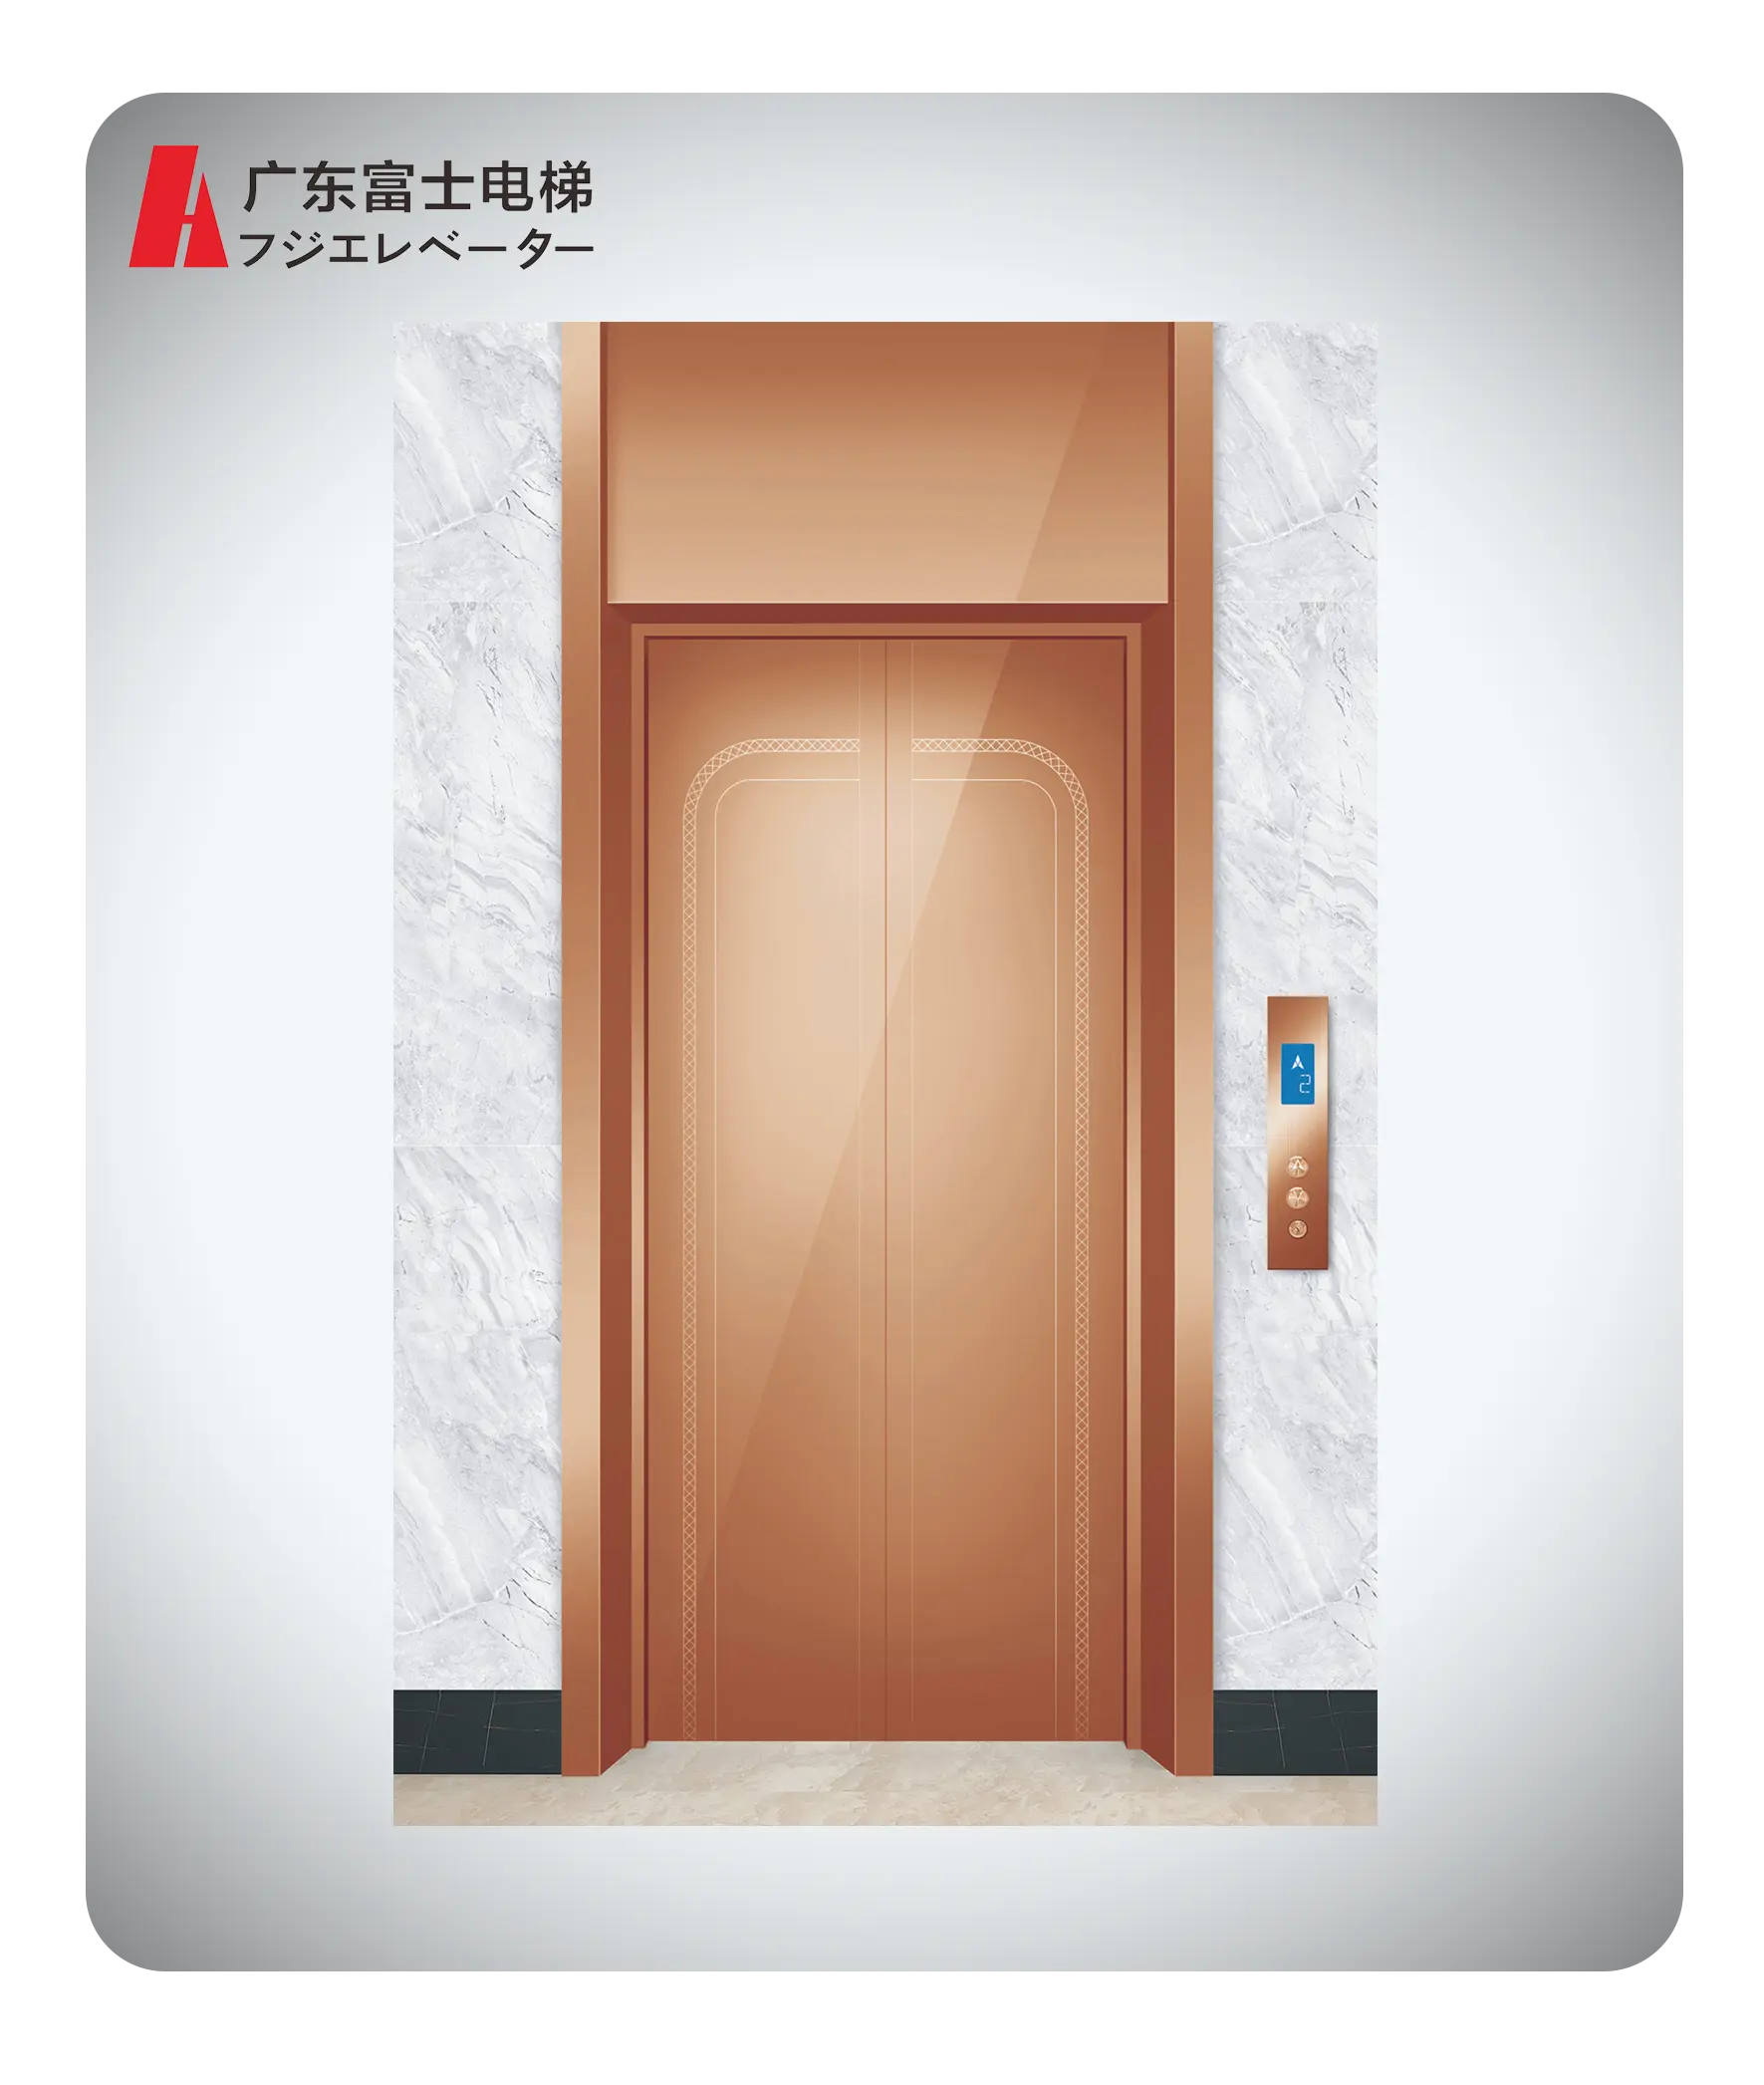 Gd-fuji 400kg VVVF sürüş kişisel asansör asansör küçük asansörler evler için